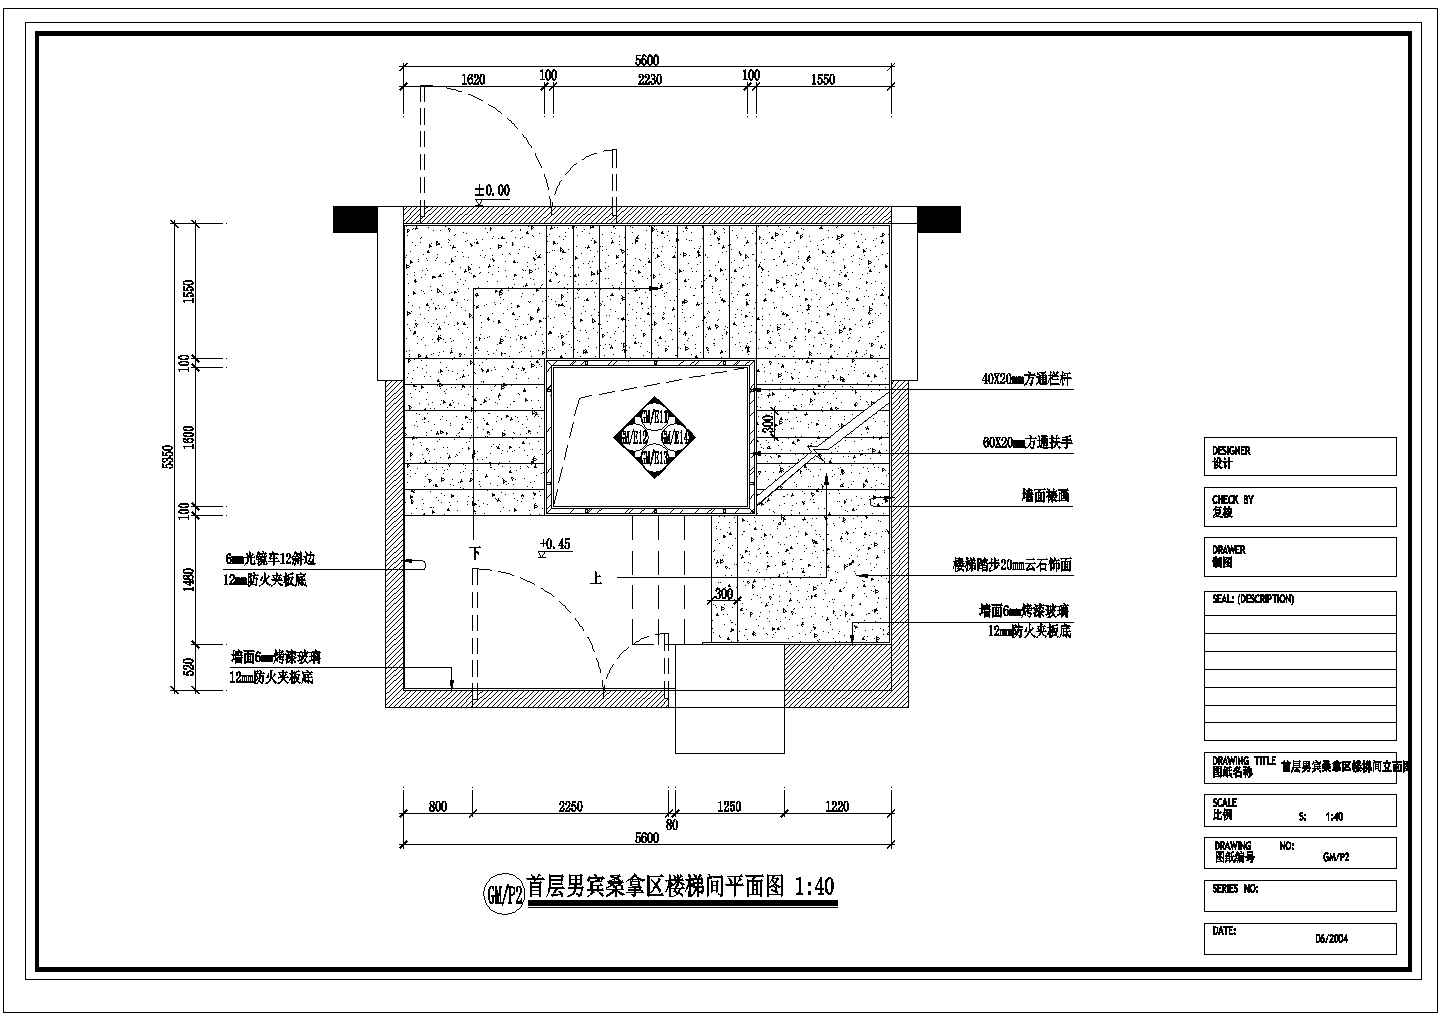 某大型洗浴空间男宾桑拿区装修图首层男宾桑拿区楼梯间CAD详细平面图